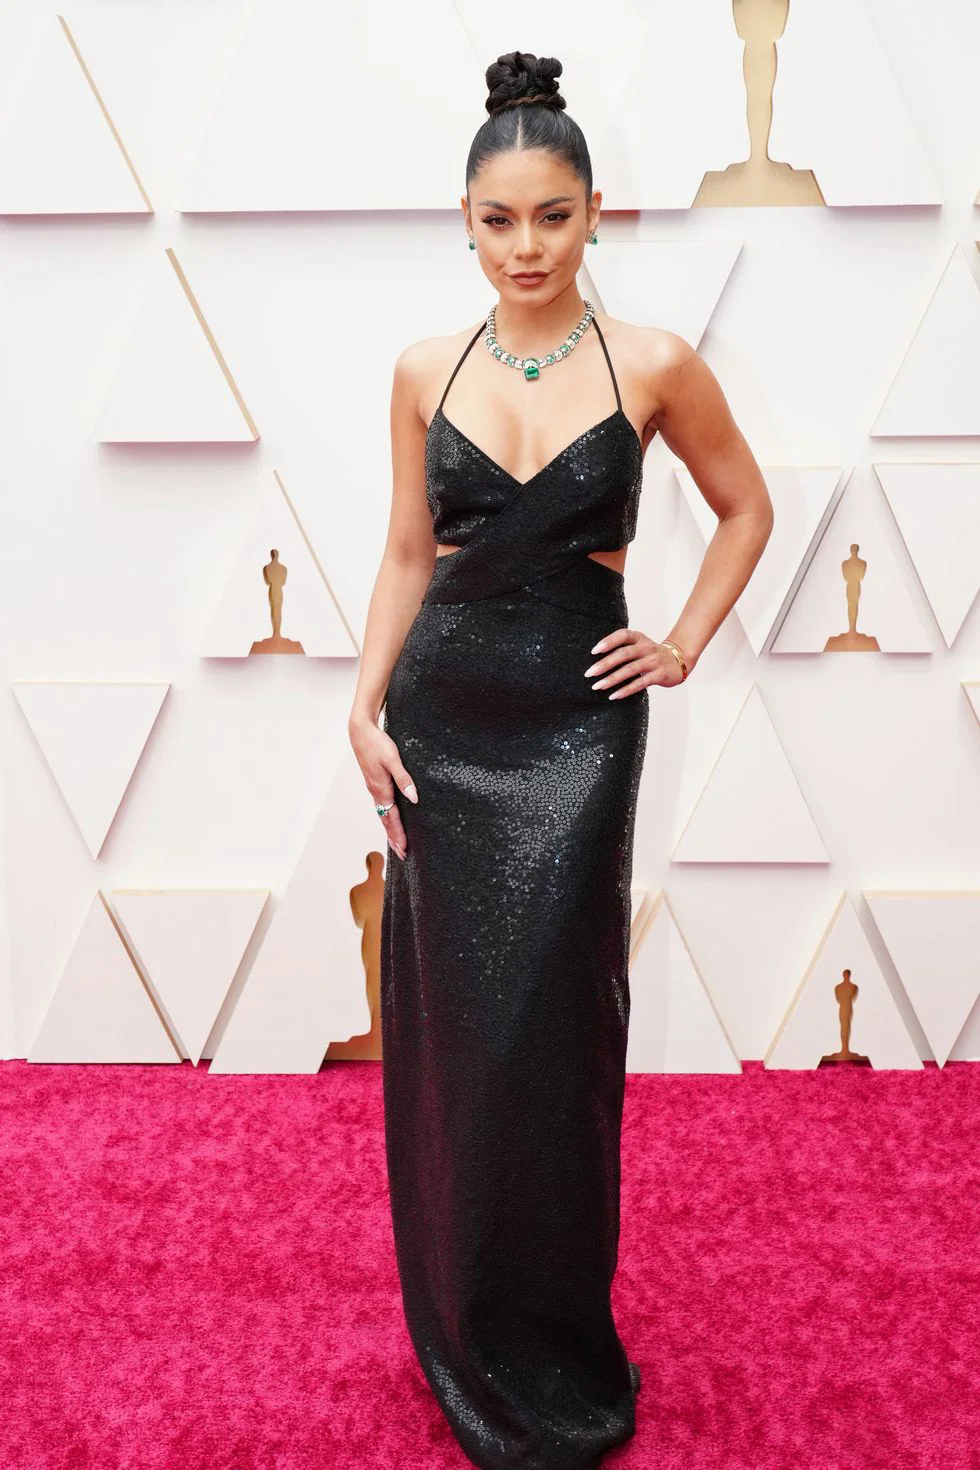 Chiếc váy đến từ nhà Michael Kors và bộ trang sức Bulgari lấp lánh đã tạo nên tổng thể vô cùng quyến rũ cho Vanessa Hudgens. Cô cũng được nhận xét là một trong những ngôi sao mặc đẹp tại Oscar 2022.